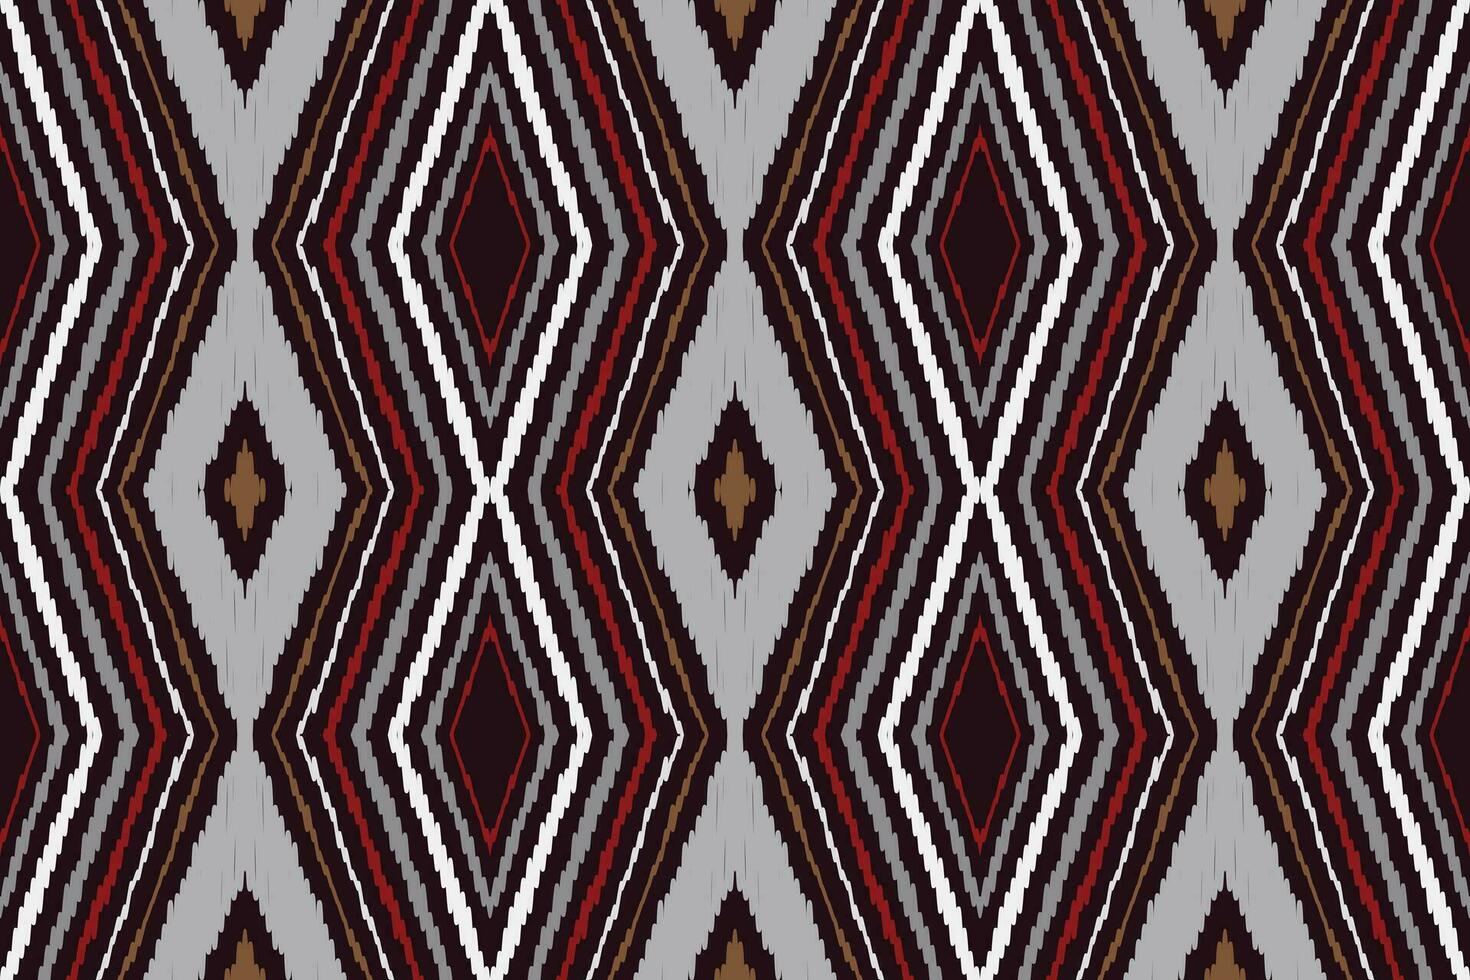 americano étnico nativo patrón.tradicional Navajo,azteca,apache,suroeste y mexicano estilo tela patrón.abstracto vector motivos patrón de diseño para tela, ropa, manta, alfombra, tejido, envoltura, decoración